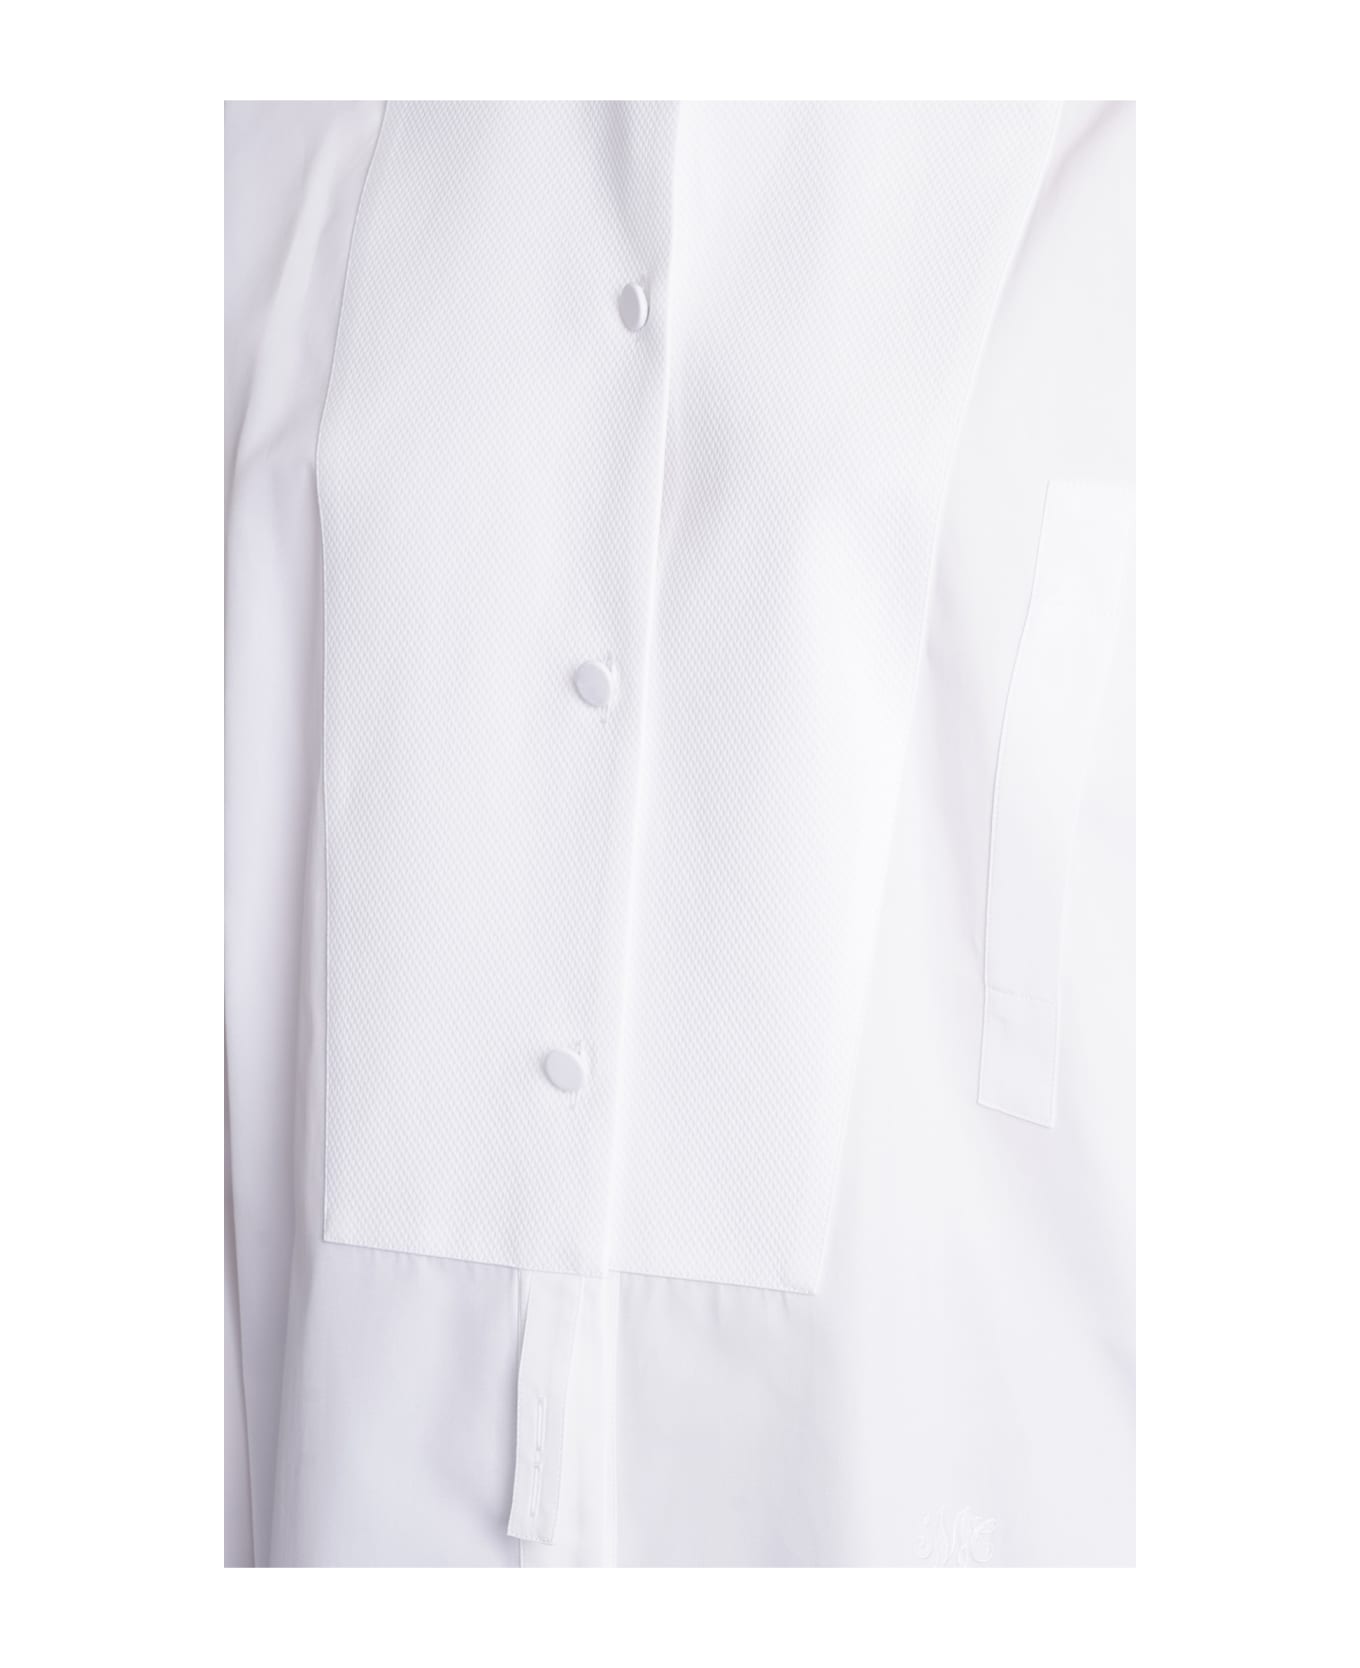 Stella McCartney Shirt In White Cotton - white ブラウス